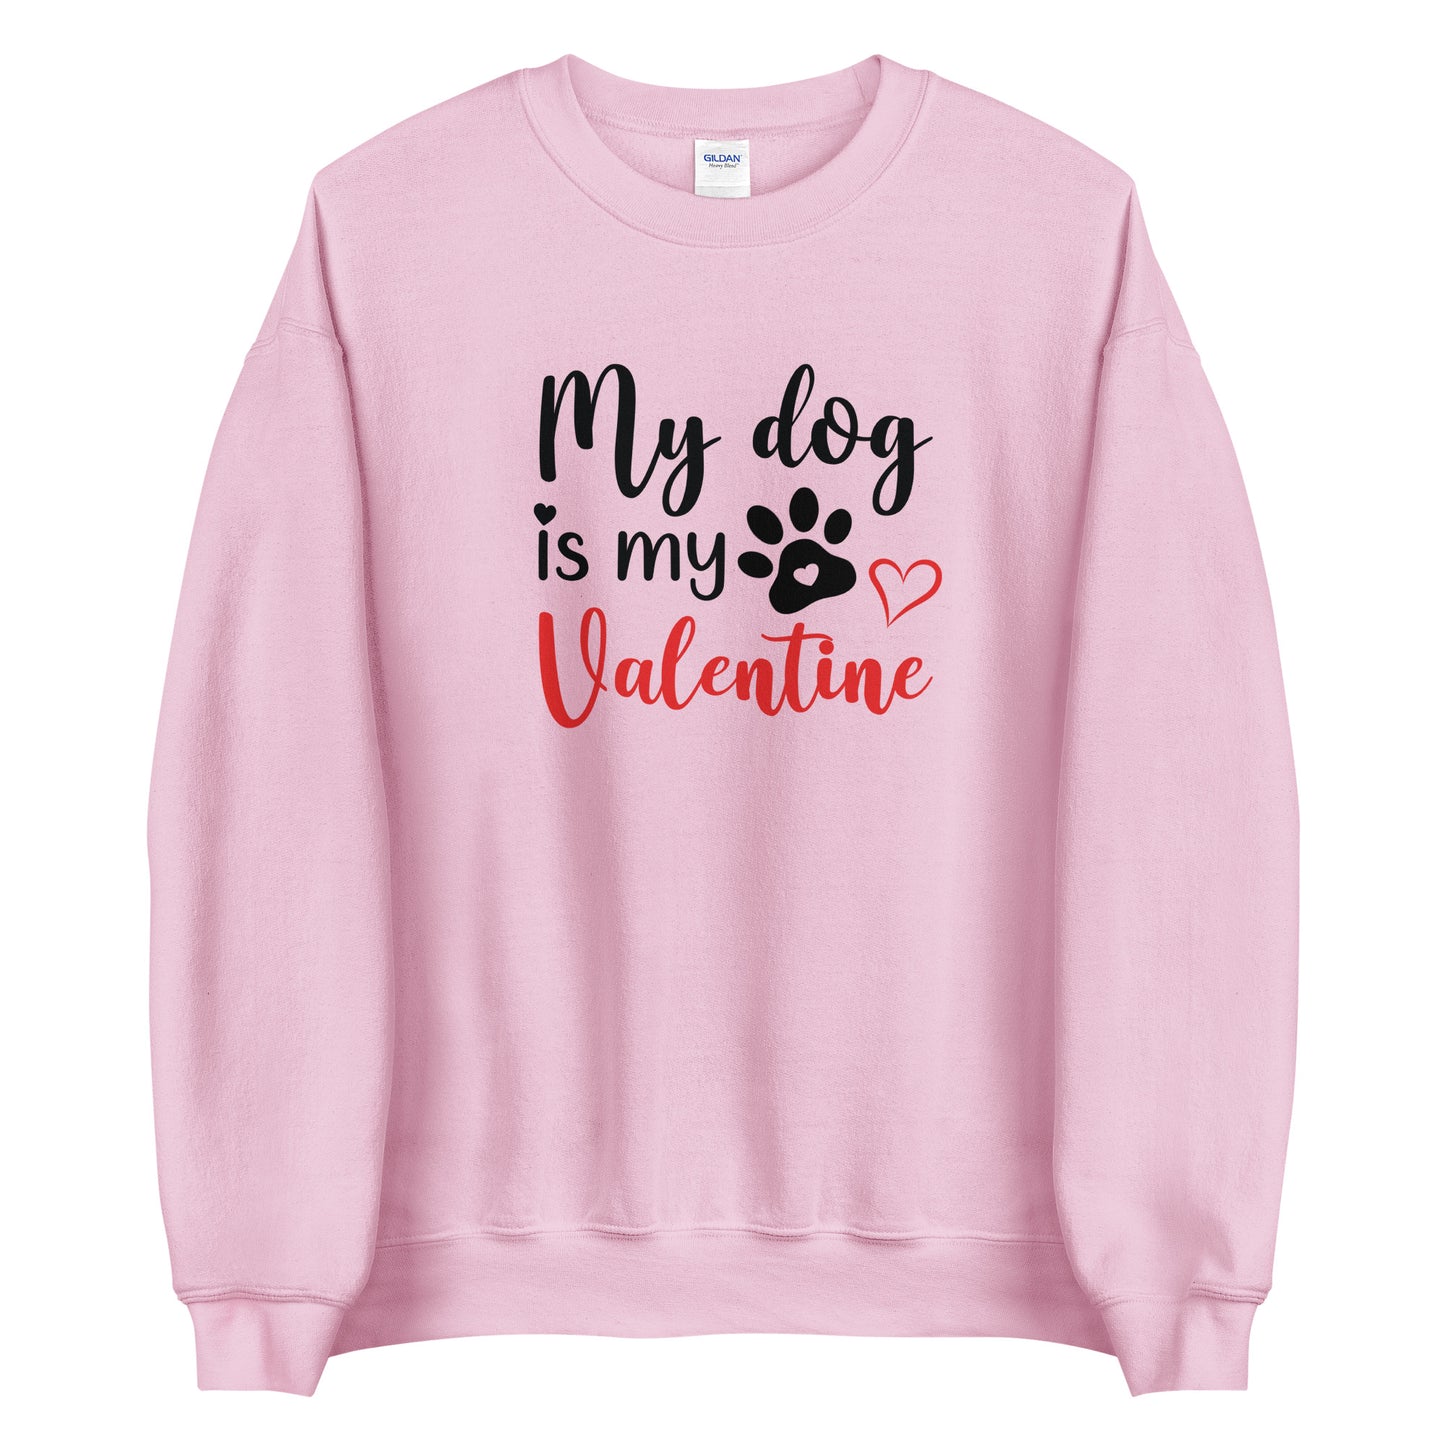 my dog is my valentine pink sweatshirt